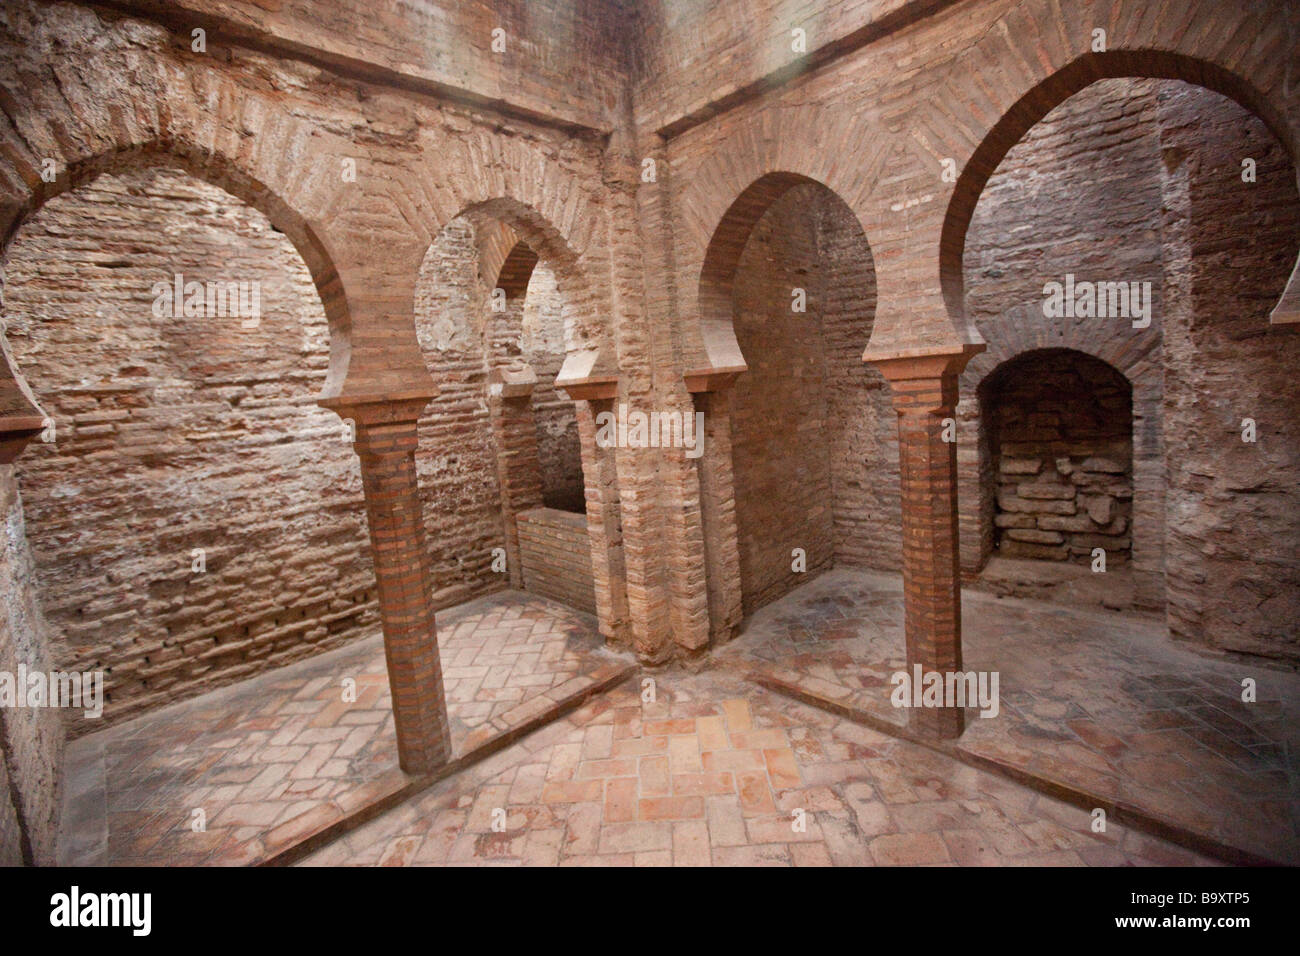 Bano de Comares all'interno dell'Harem nell'Alhambra di Granada Spagna Foto Stock